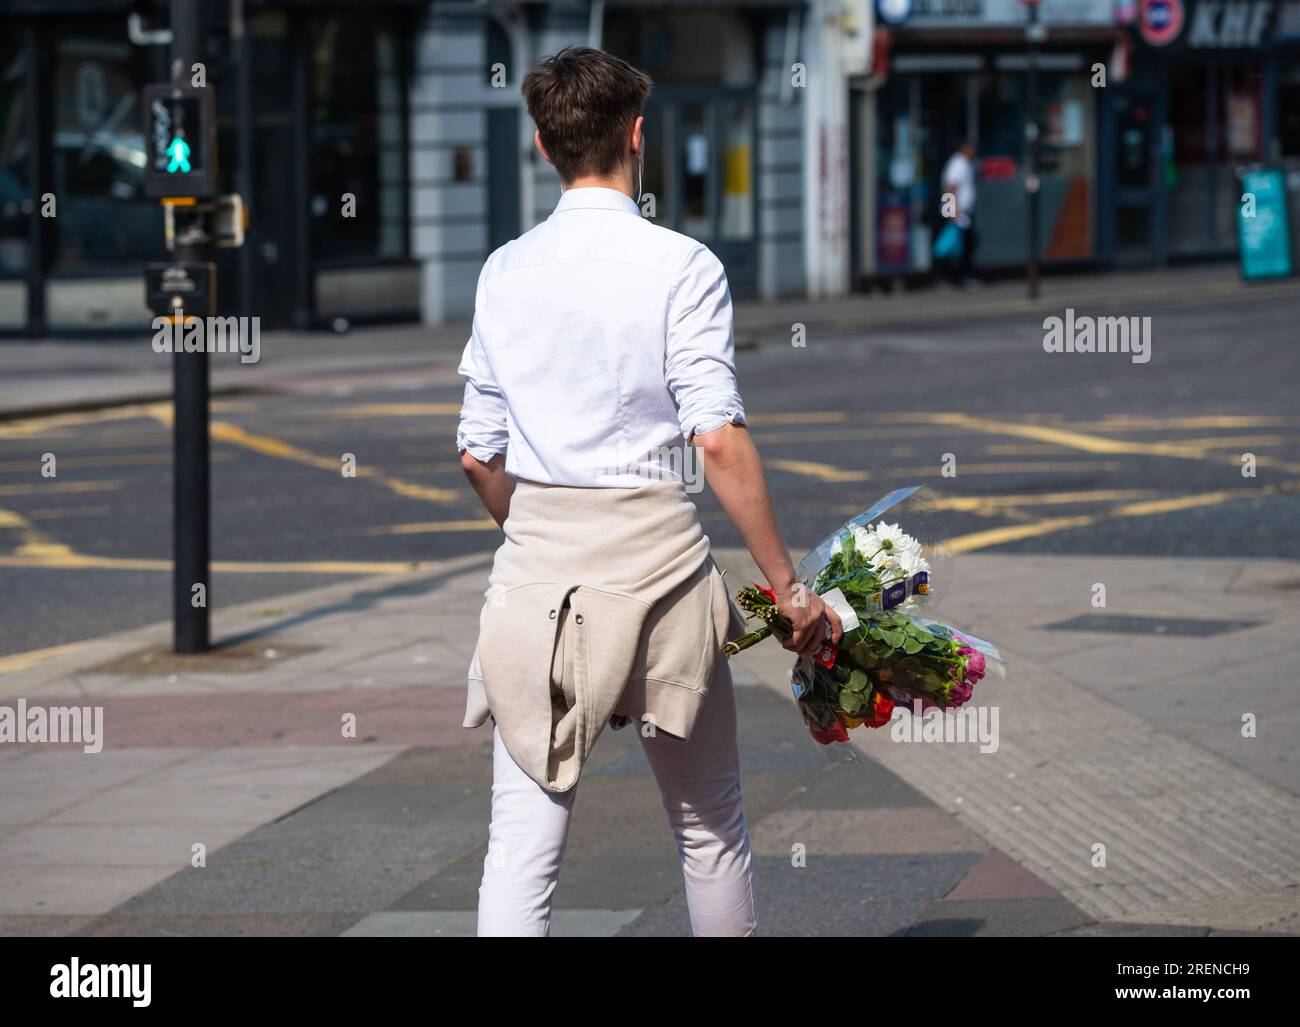 Junger Mann, der läuft, Stadt, Sommer, trägt, ein paar Blumen, England, Großbritannien. Liebeskonzept, romantisches Konzept, Romantik, junge Liebe. Blumenstrauß. Stockfoto